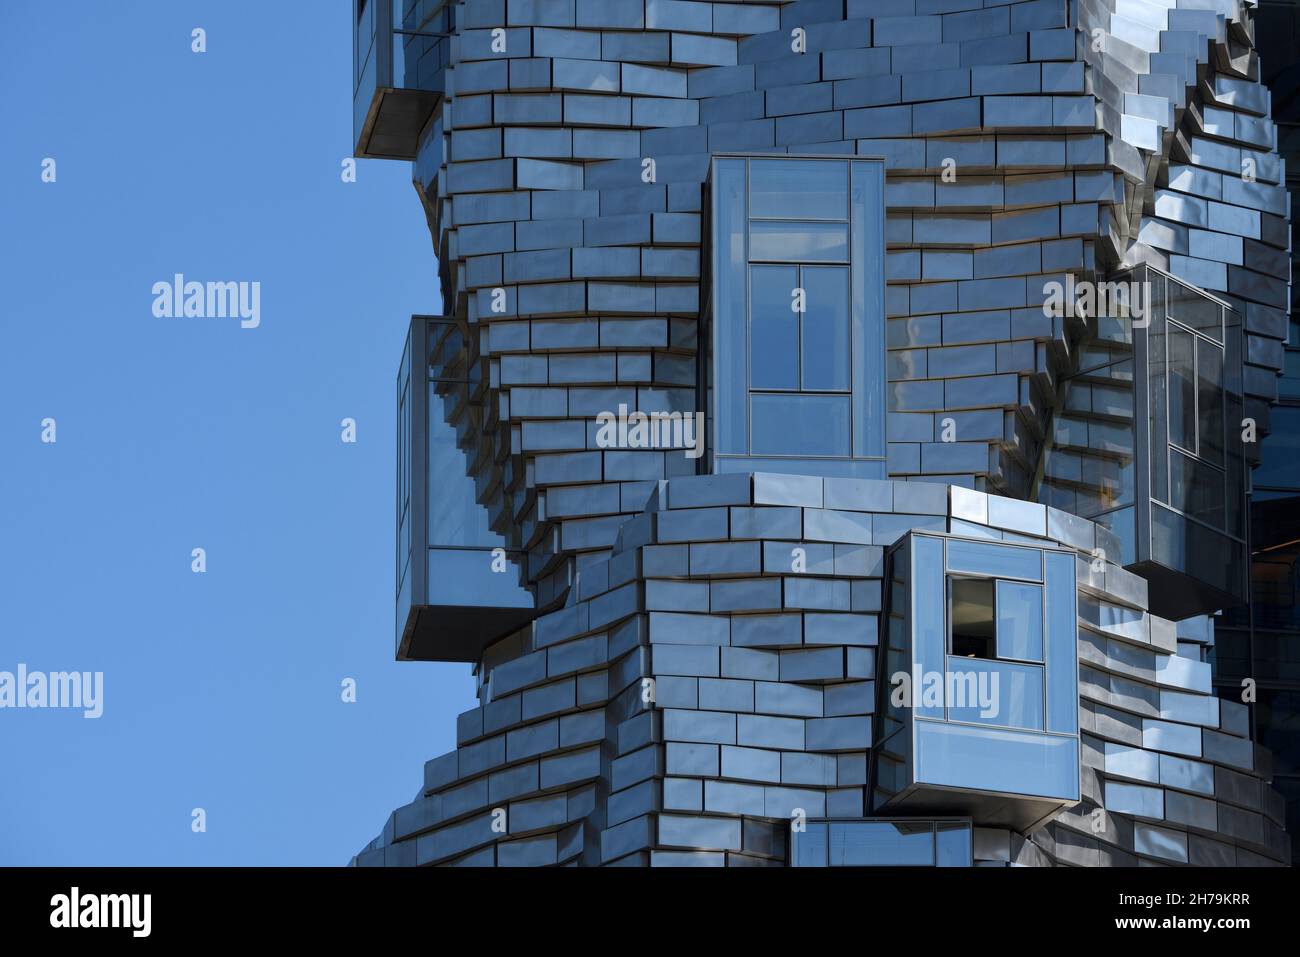 Bardage ou panneaux en métal ou en acier, motif de fenêtre et façade de la Fondation Luma Tour ou Galerie conçue par Frank Gehry Arles Provence France Banque D'Images